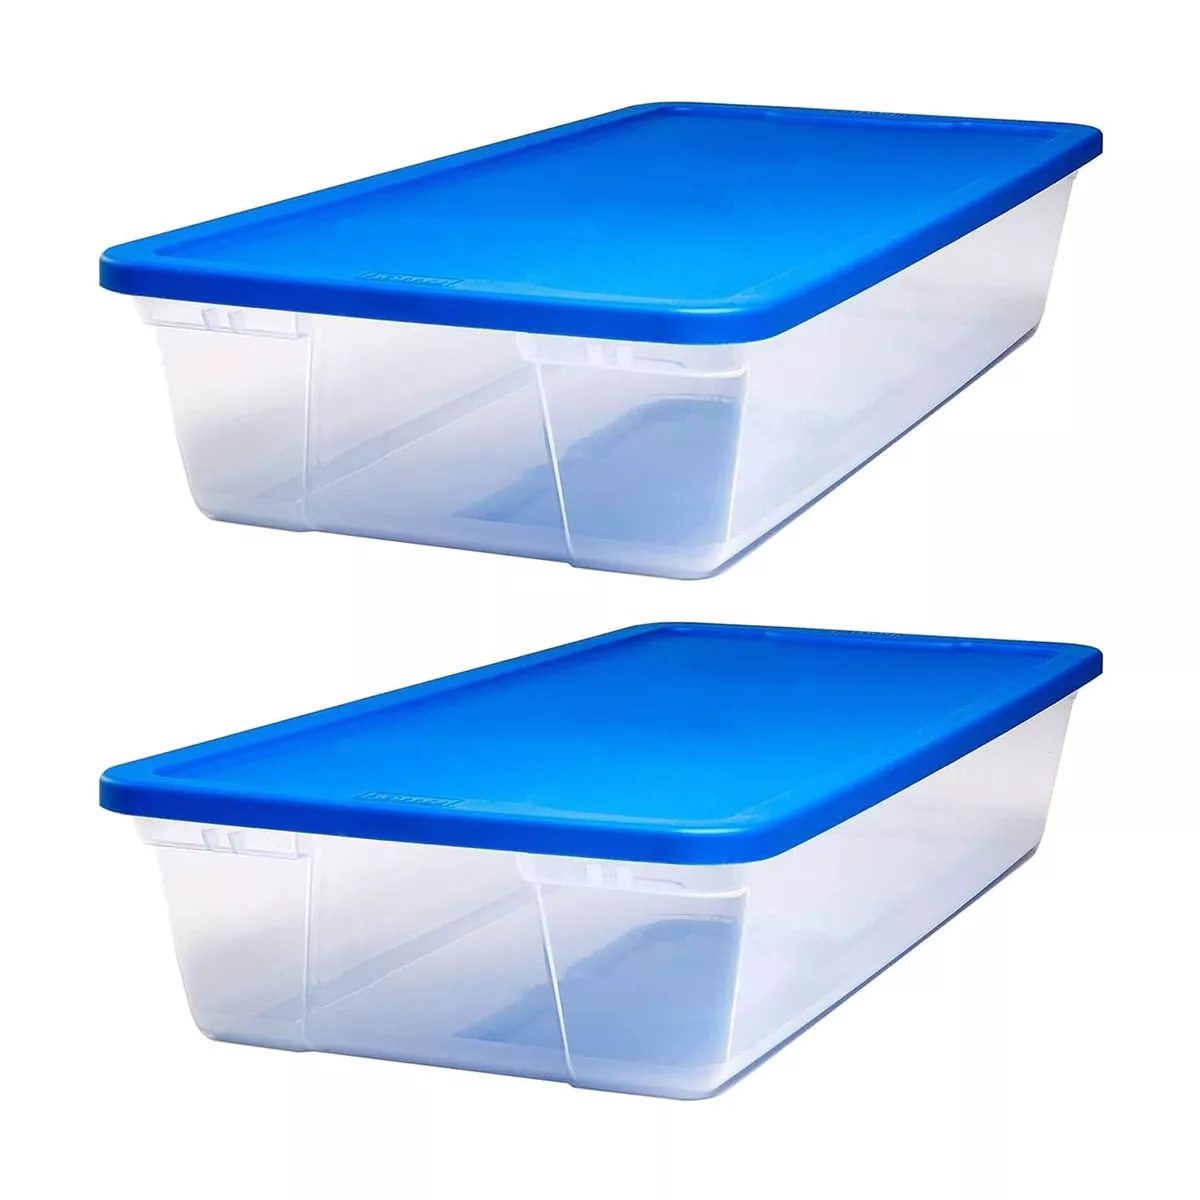 Homz Snaplock 41 Qt Stackable Plastic Storage Container w/ Lid, Blue (2  Pack)